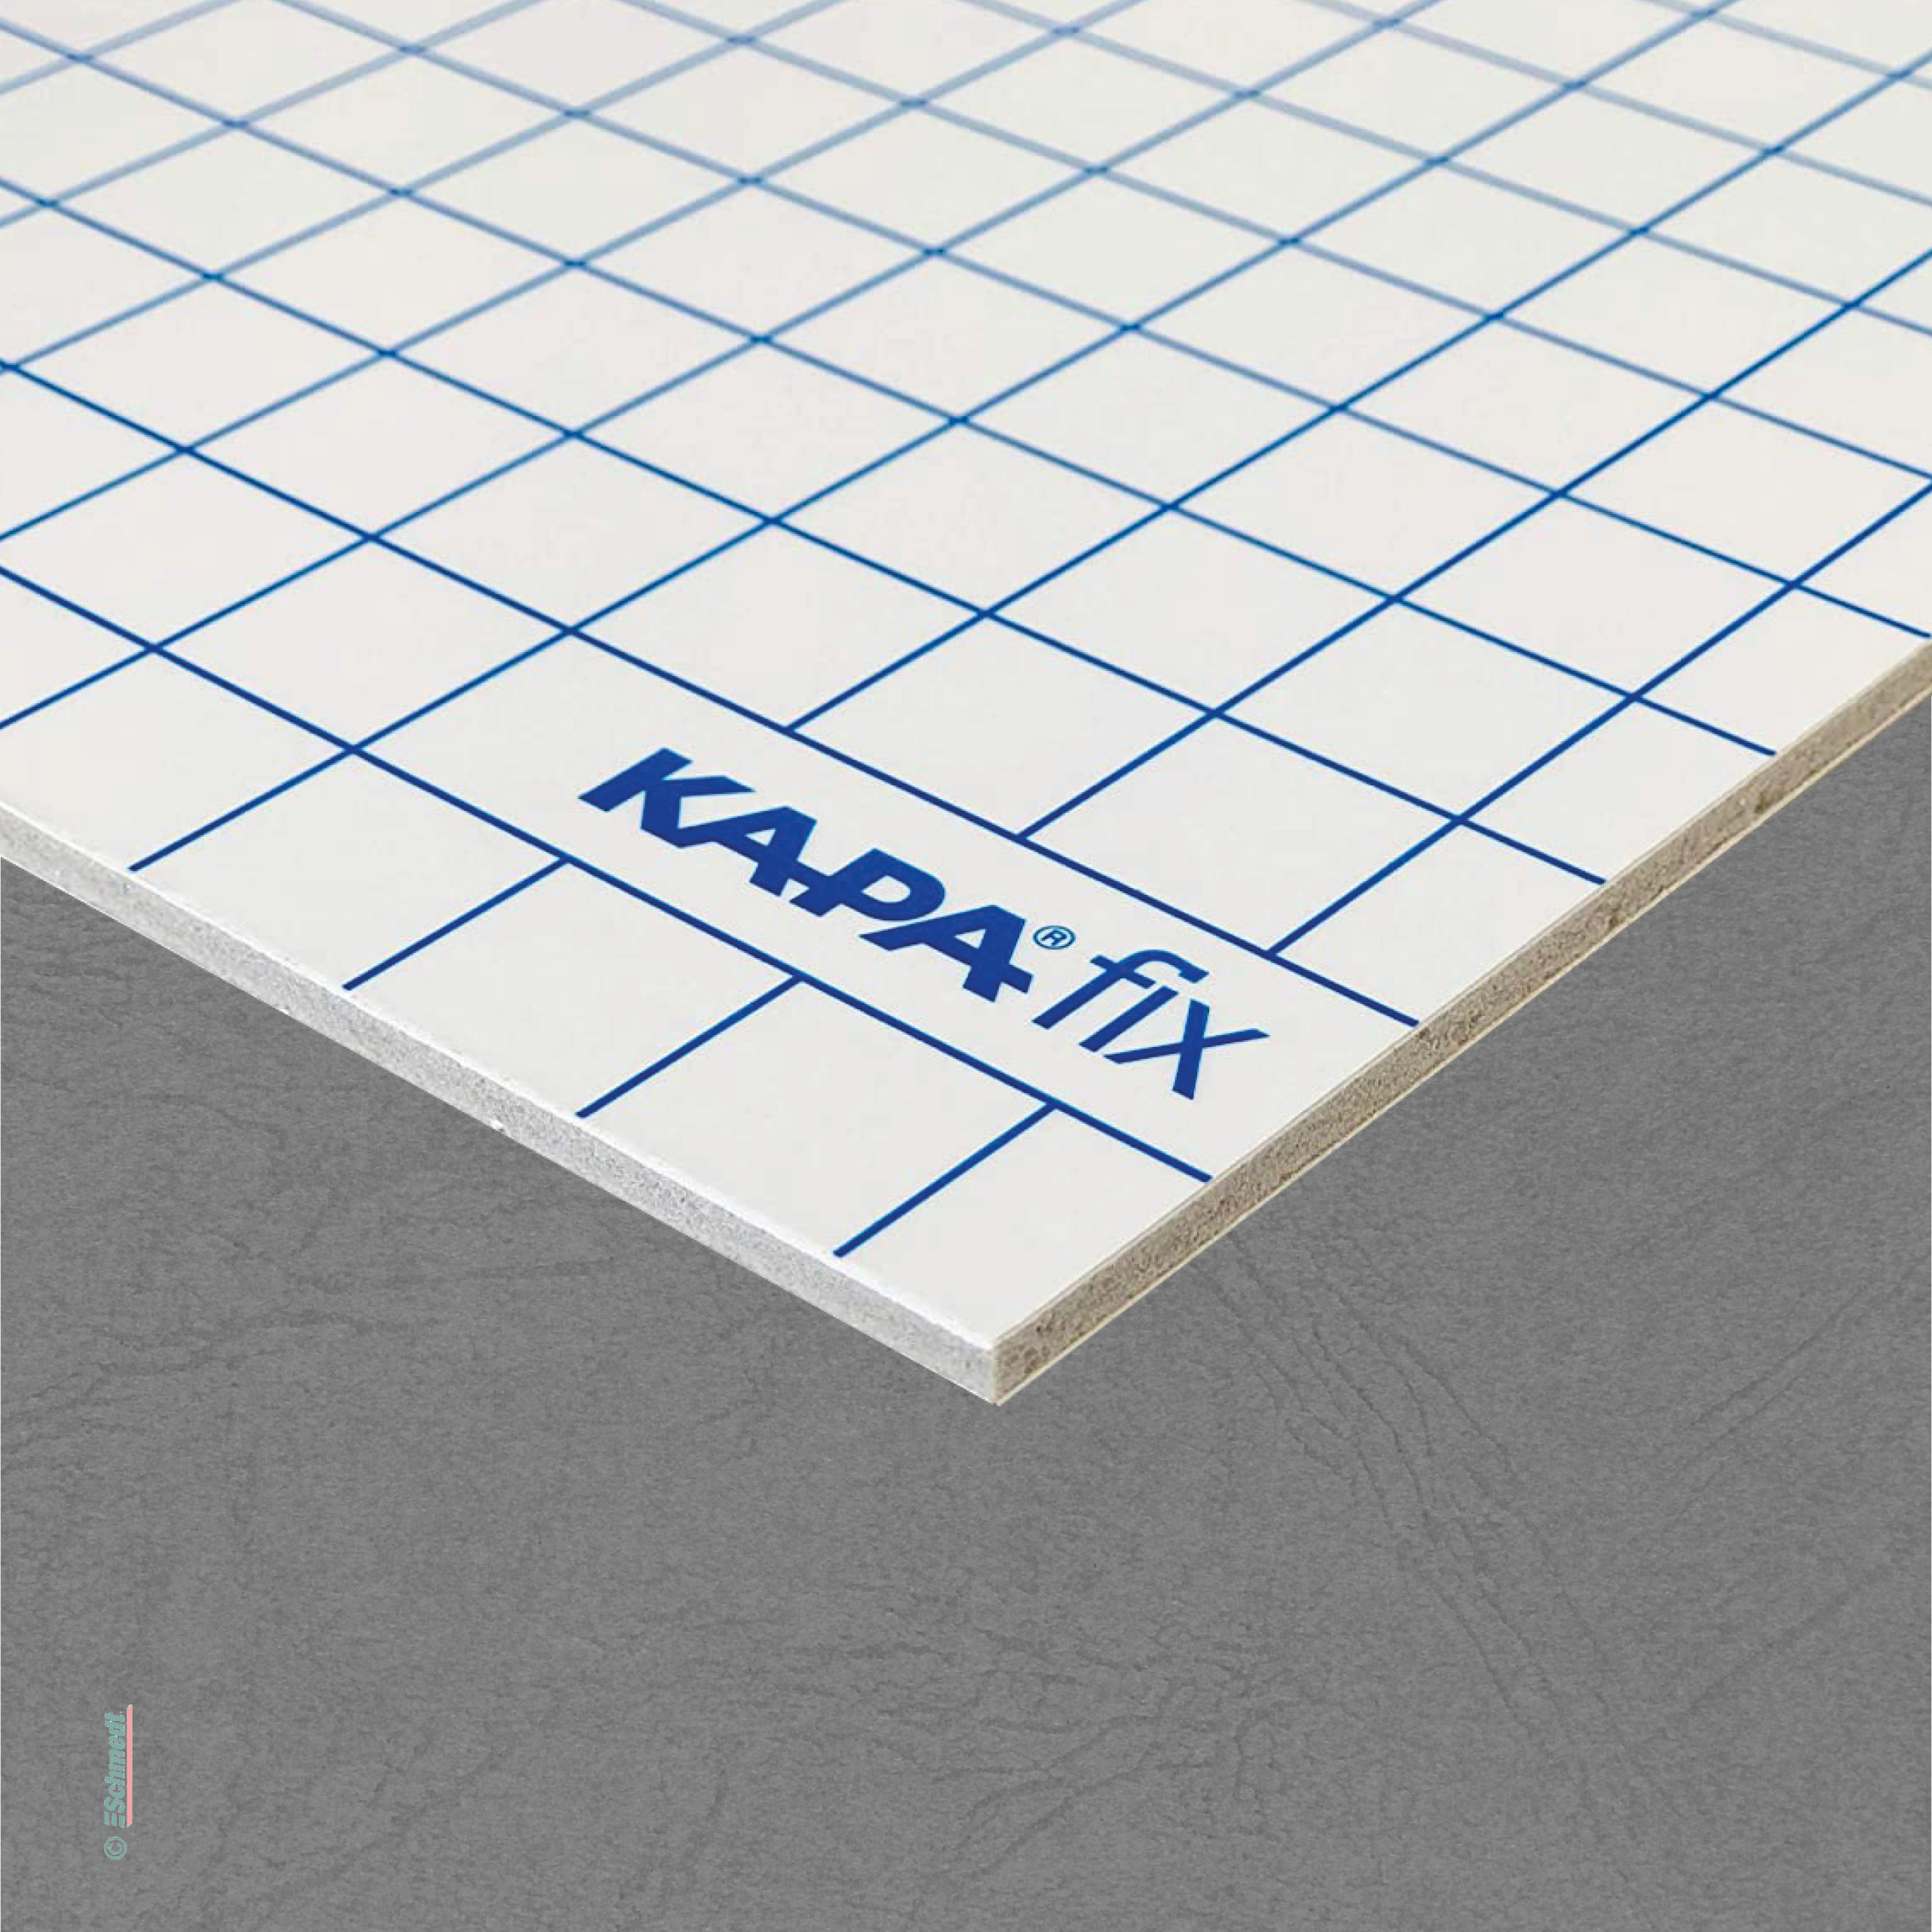 Cartón pluma Kapa-Fix - dos lados autoadhesivos - Aplicación: Placas de laminación rápida para impresiones digitales, fotos, grabados, plano...